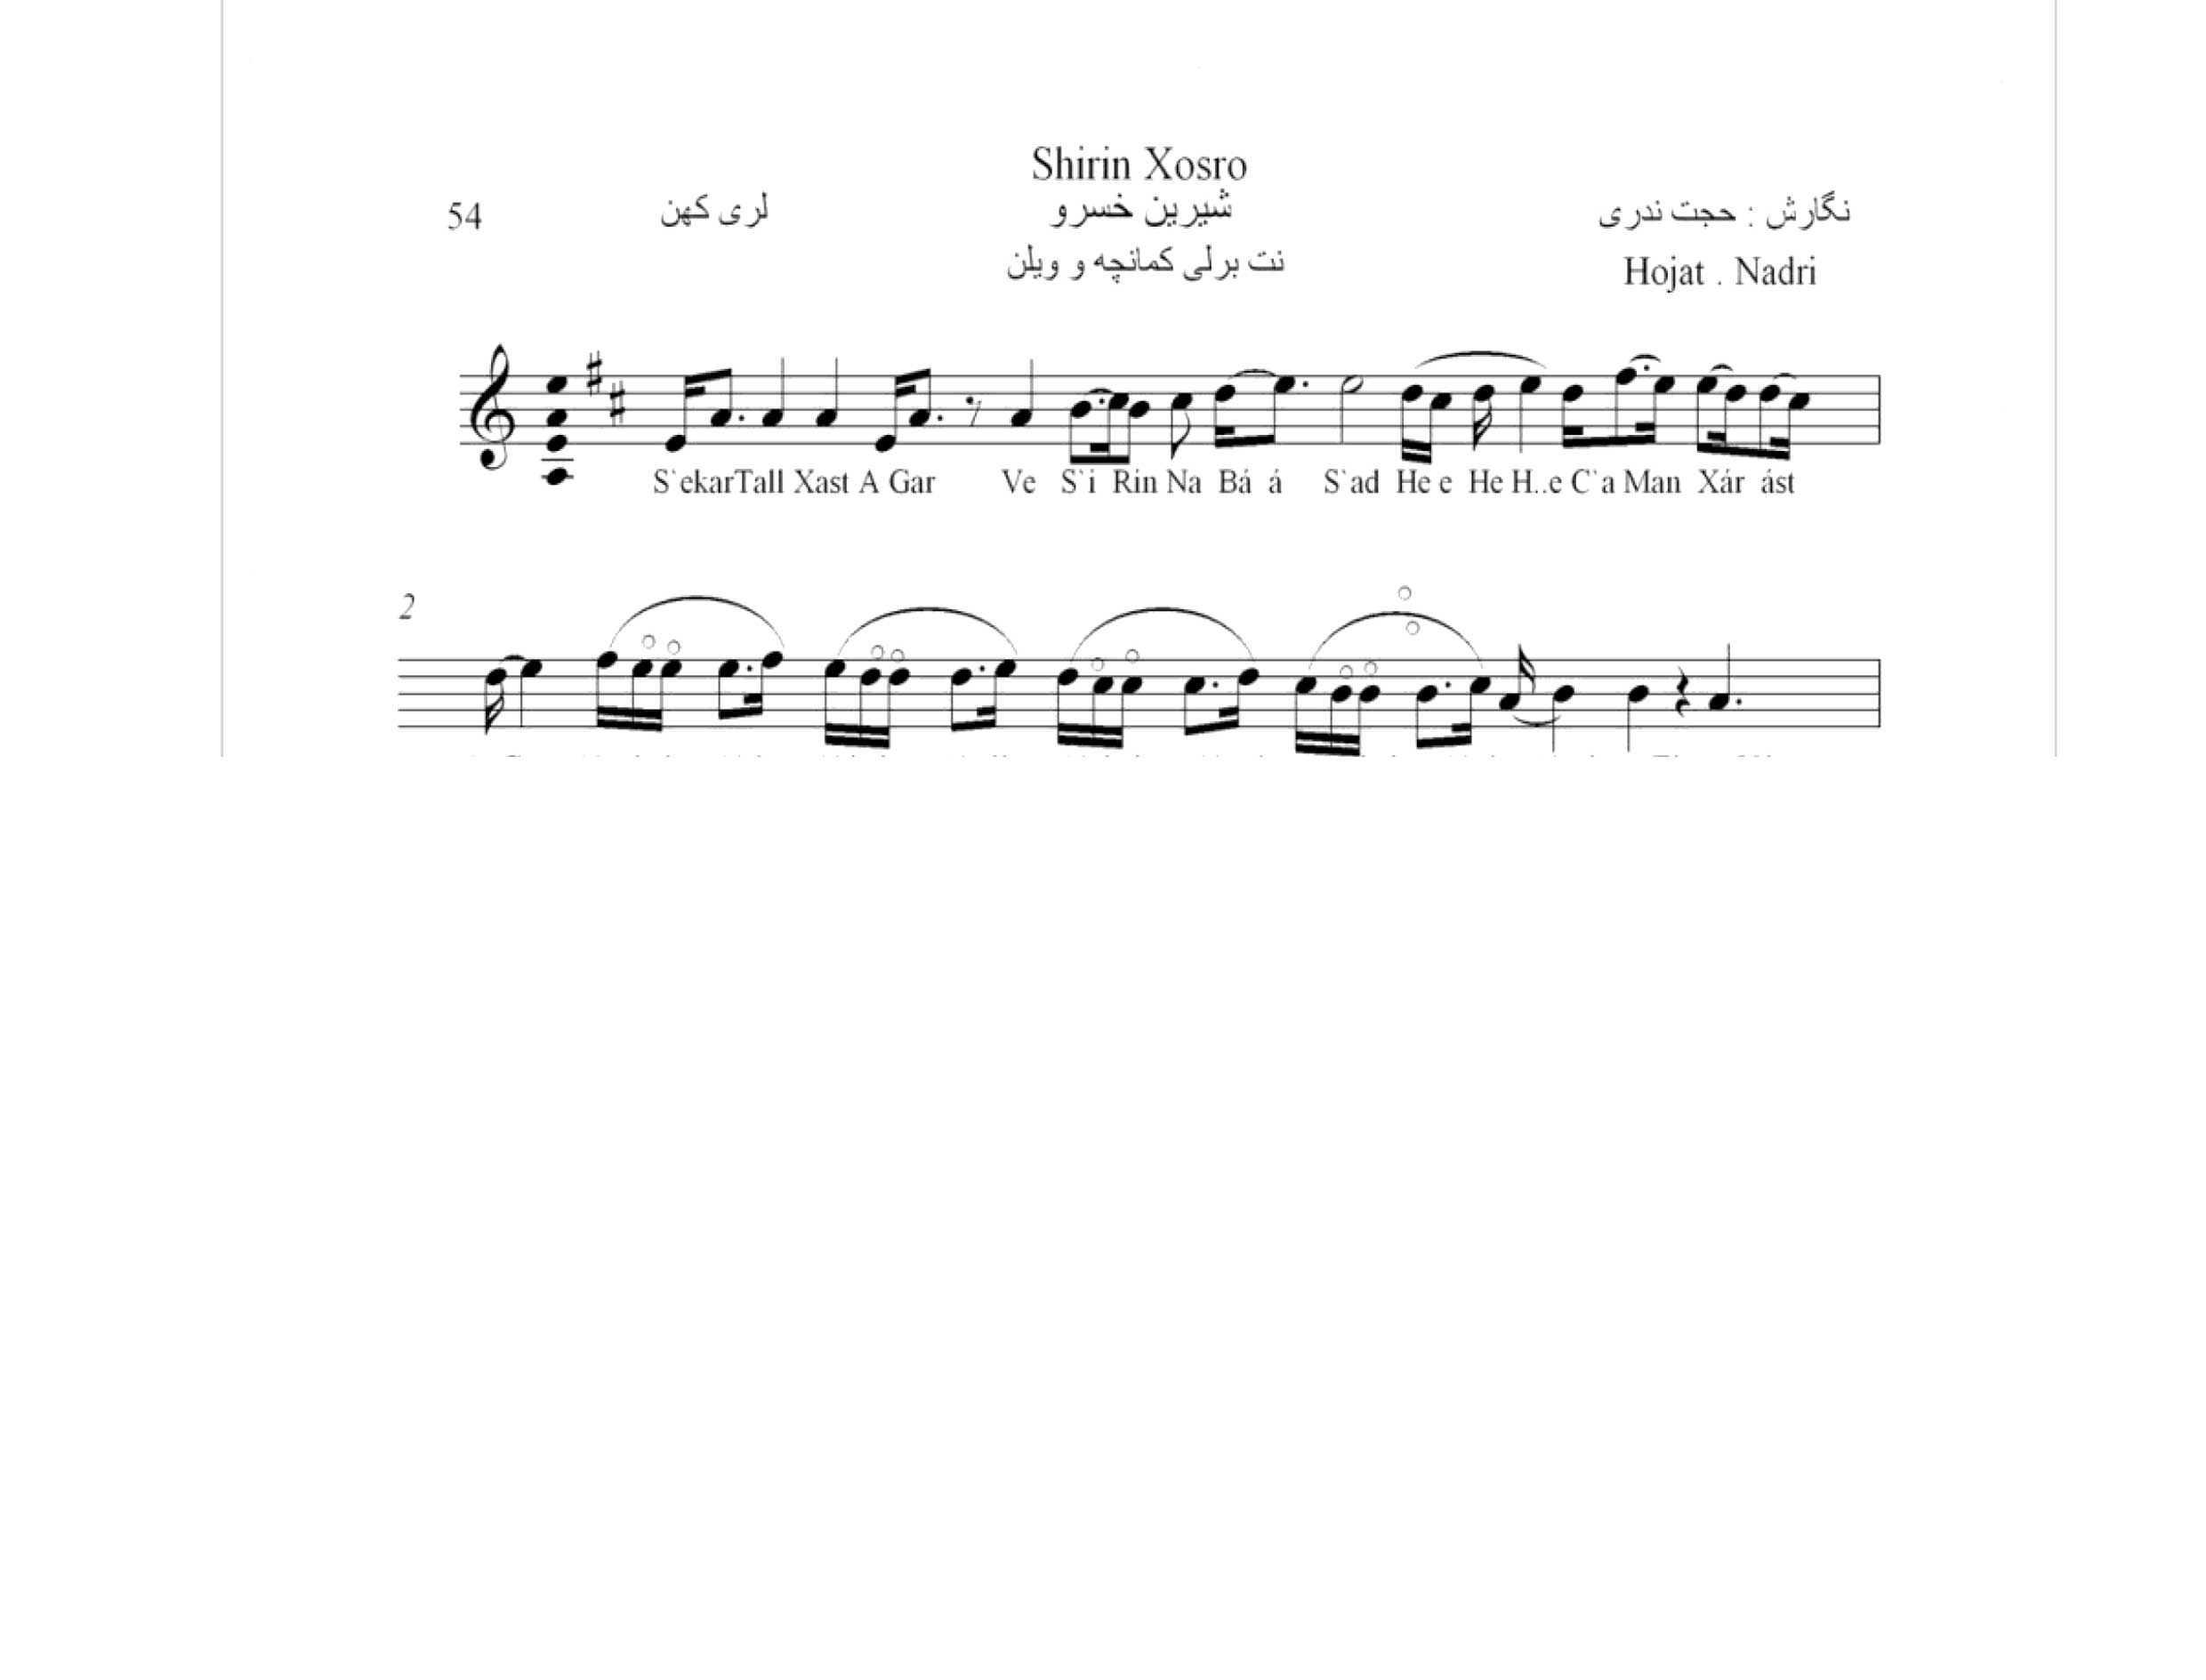 نت آهنگ محلی لری شیرین خسرو حجت اله ندری قابل اجرا با کمانچه و دیگر سازها